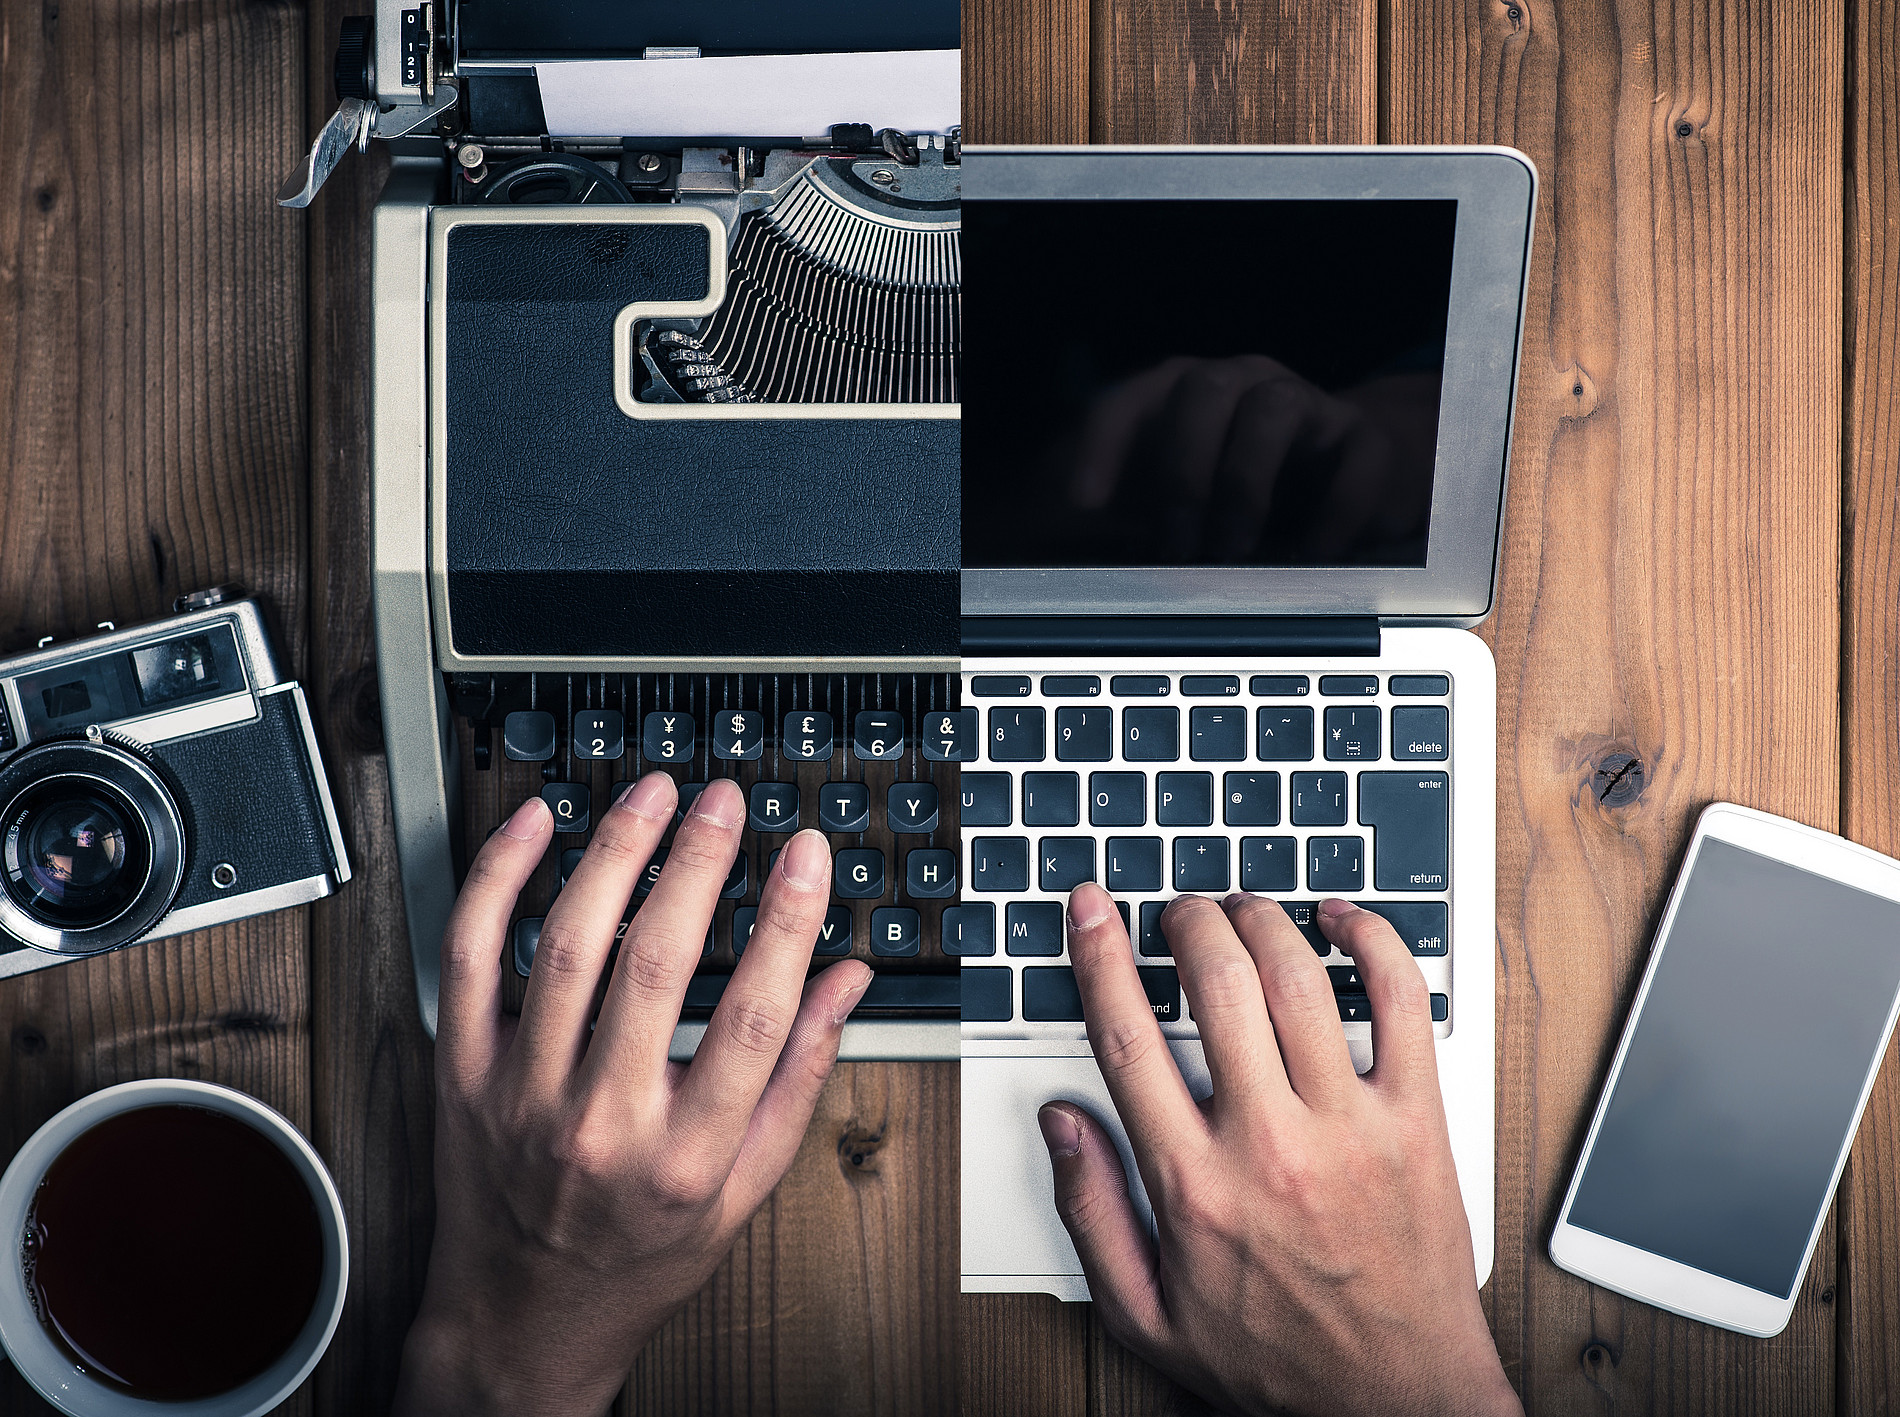 Ein in zwei Hälften geteiltes Bild. Links ist eine Schreibmaschine zu sehen, auf der eine Hand etwas tippt und rechts ein Laptop auf dem ebenfalls getippt wird. 